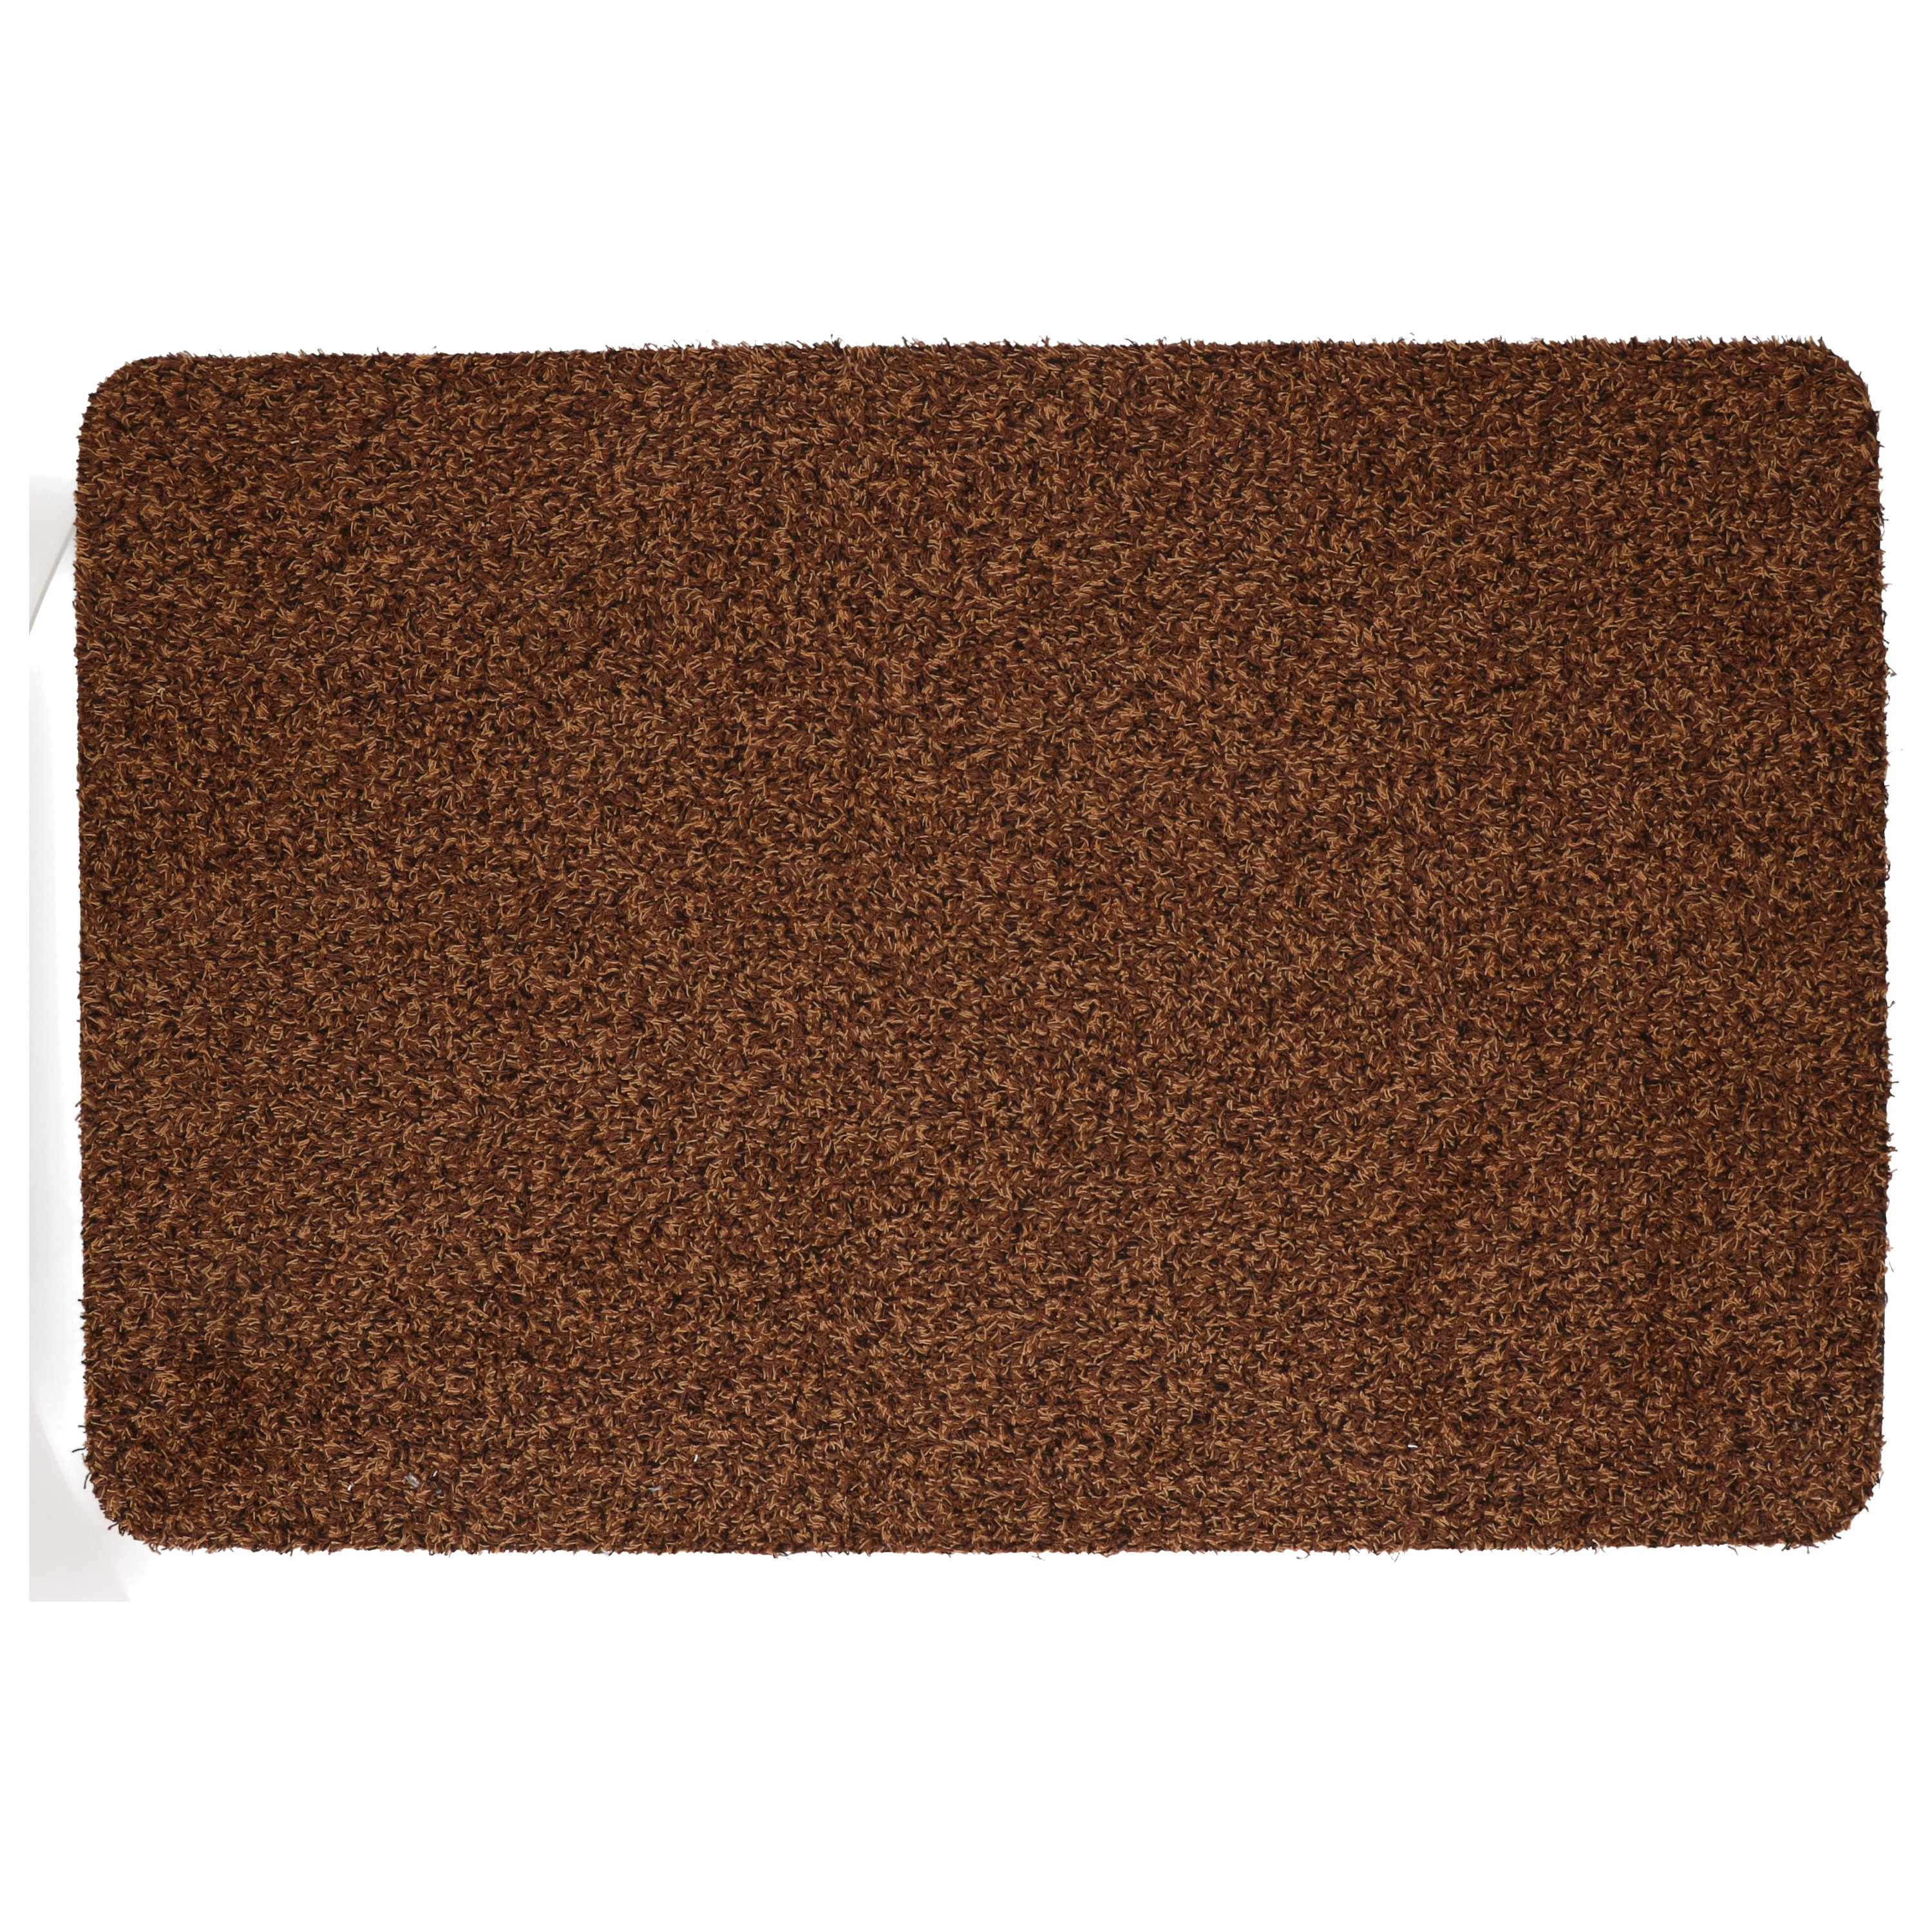 Anti slip deurmat/schoonloopmat pvc bruin extra absorberend 60 x 40 cm voor binnen